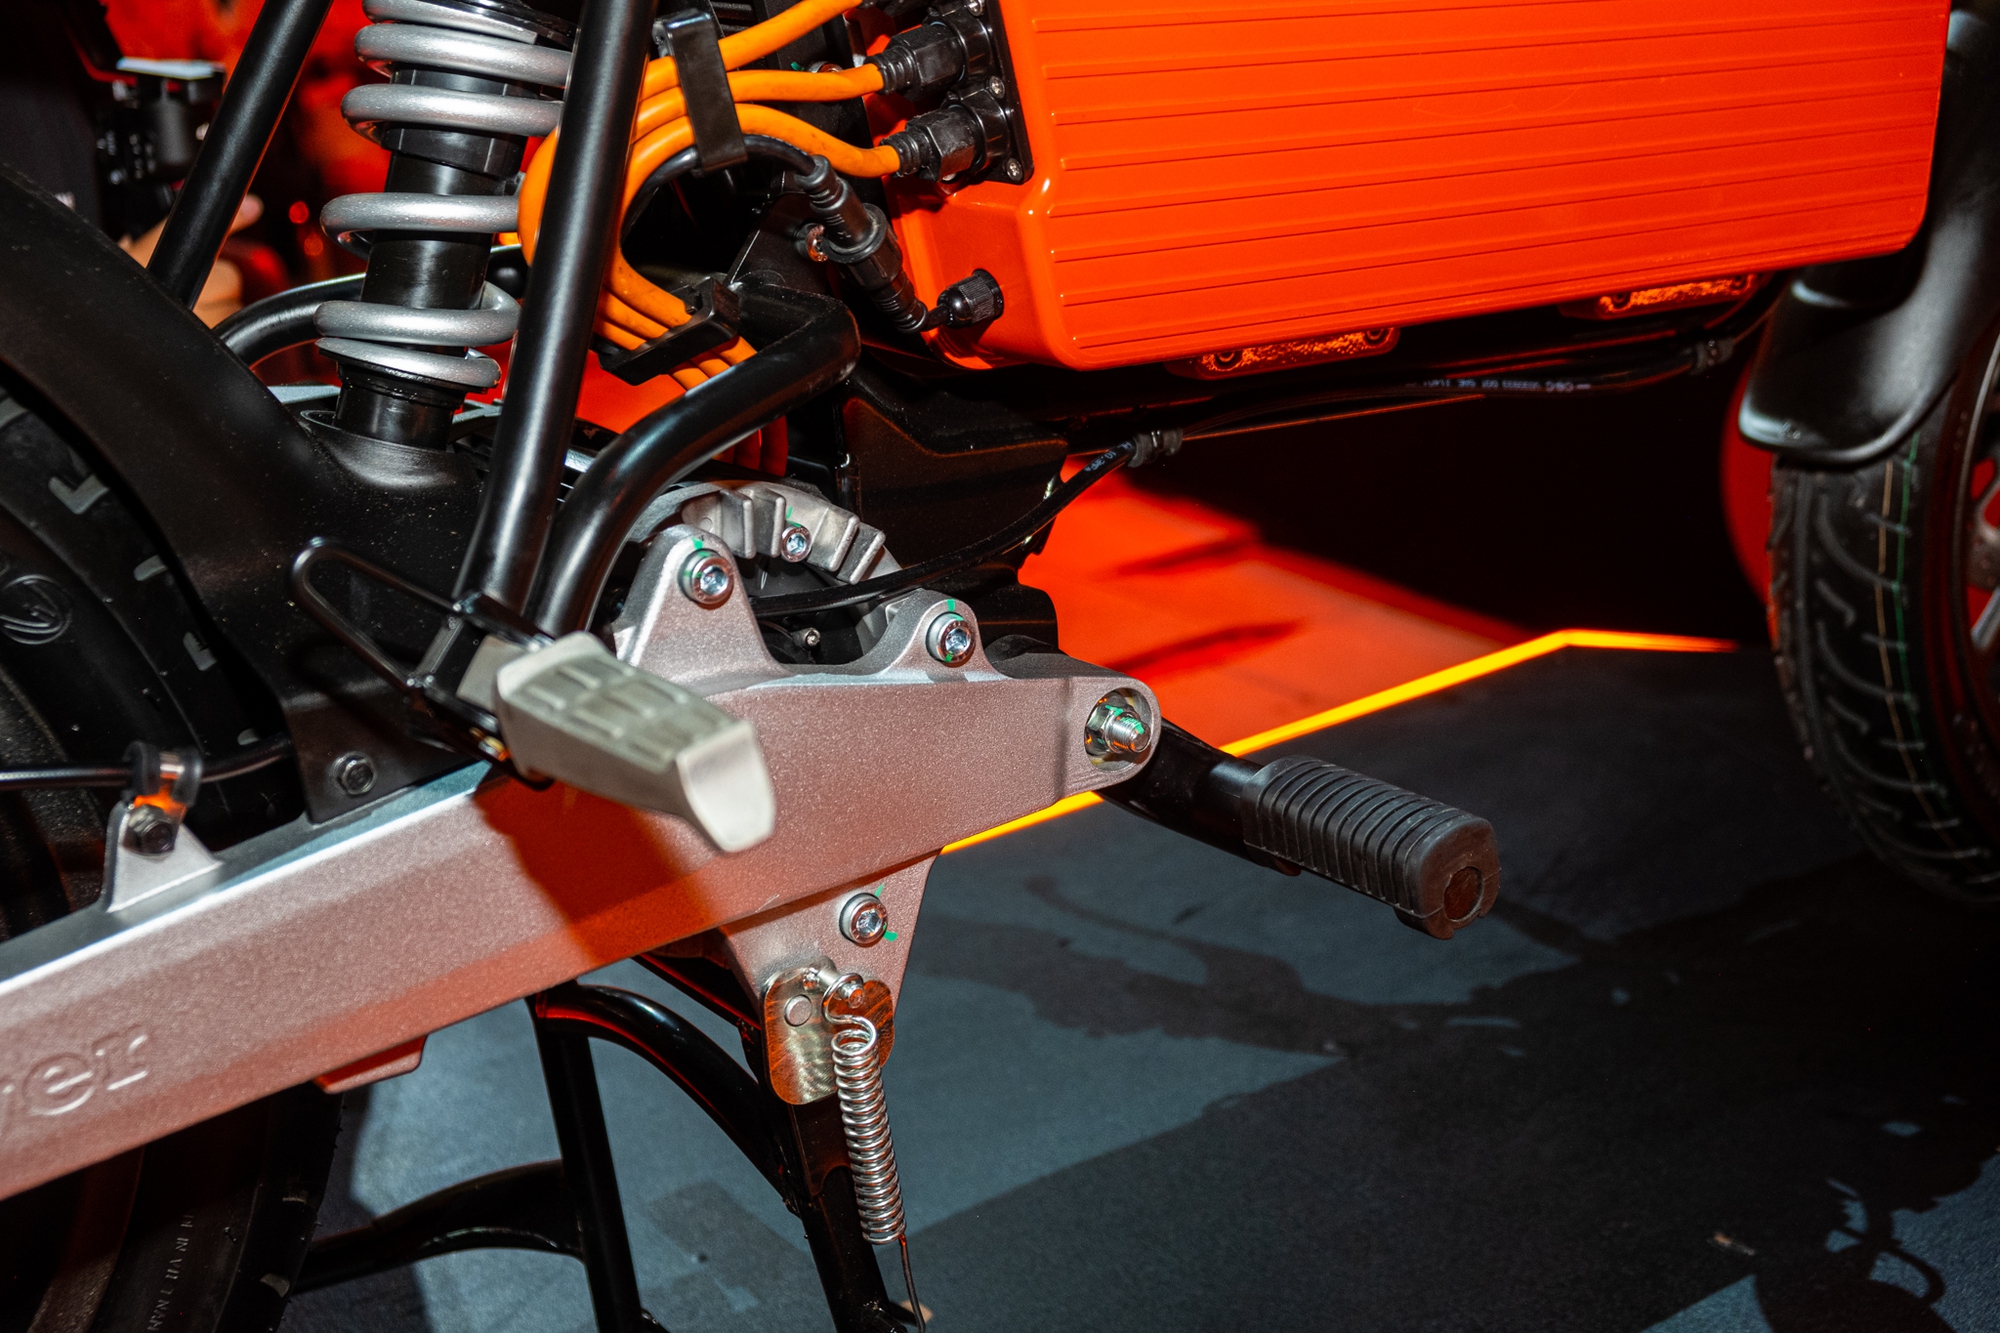 Ra mắt Dat Bike Weaver++: Giá 65,9 triệu đồng, dáng cổ điển, sạc nhanh chưa từng có tại Việt Nam - ảnh 15